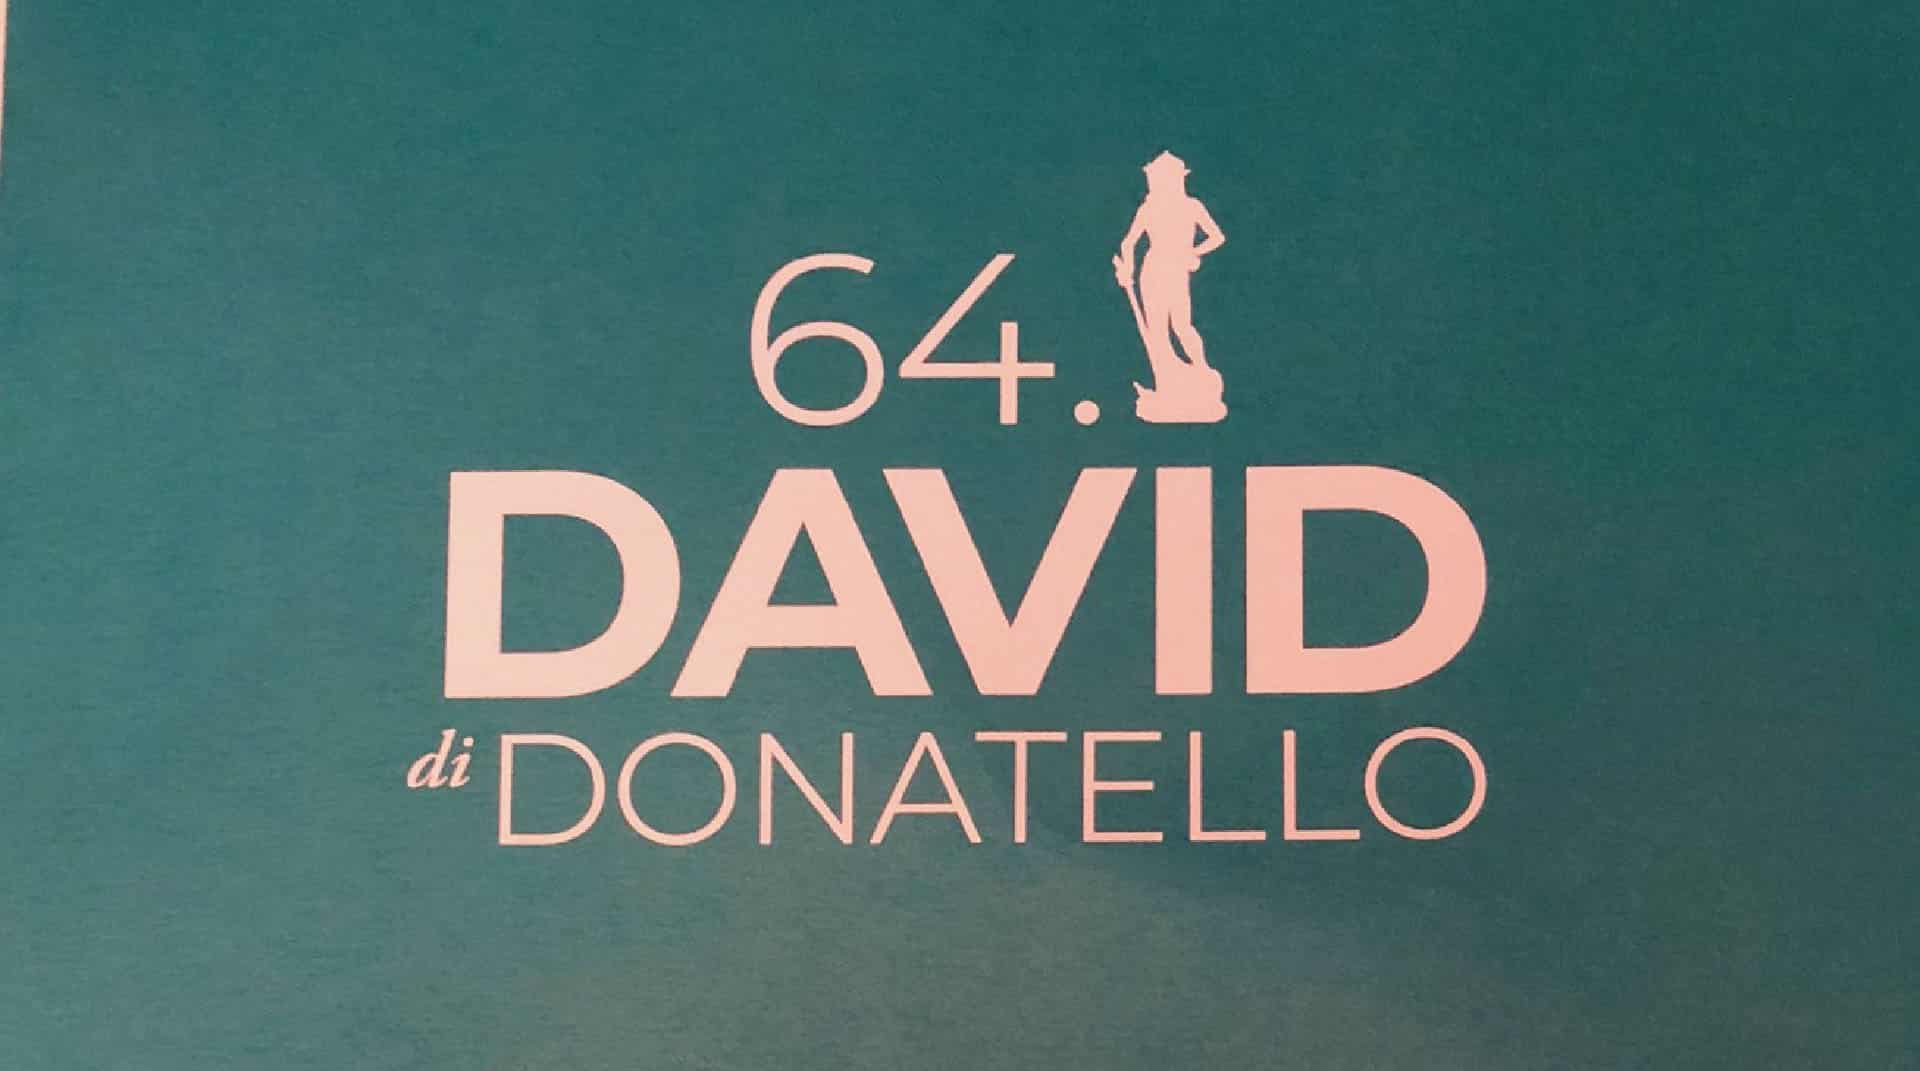 David di Donatello, cinematographe.it